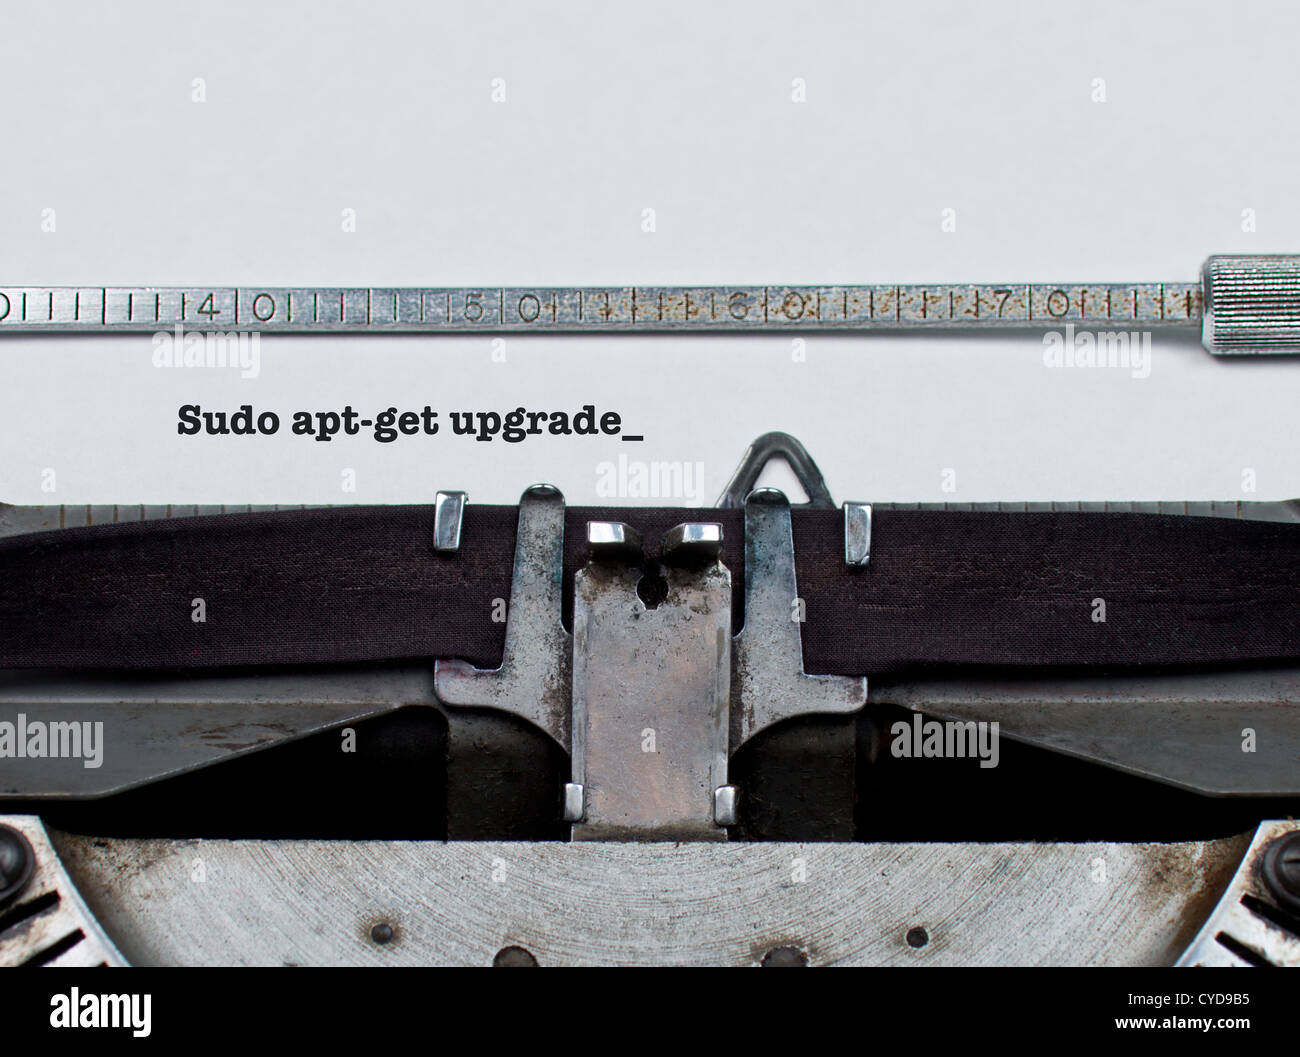 Sudo apt-Get Upgrade  Unix/Linux-Befehl auf einem Vintage Schreibmaschine Software Update Upgrade Konzept konzeptionell eingegeben Stockfoto